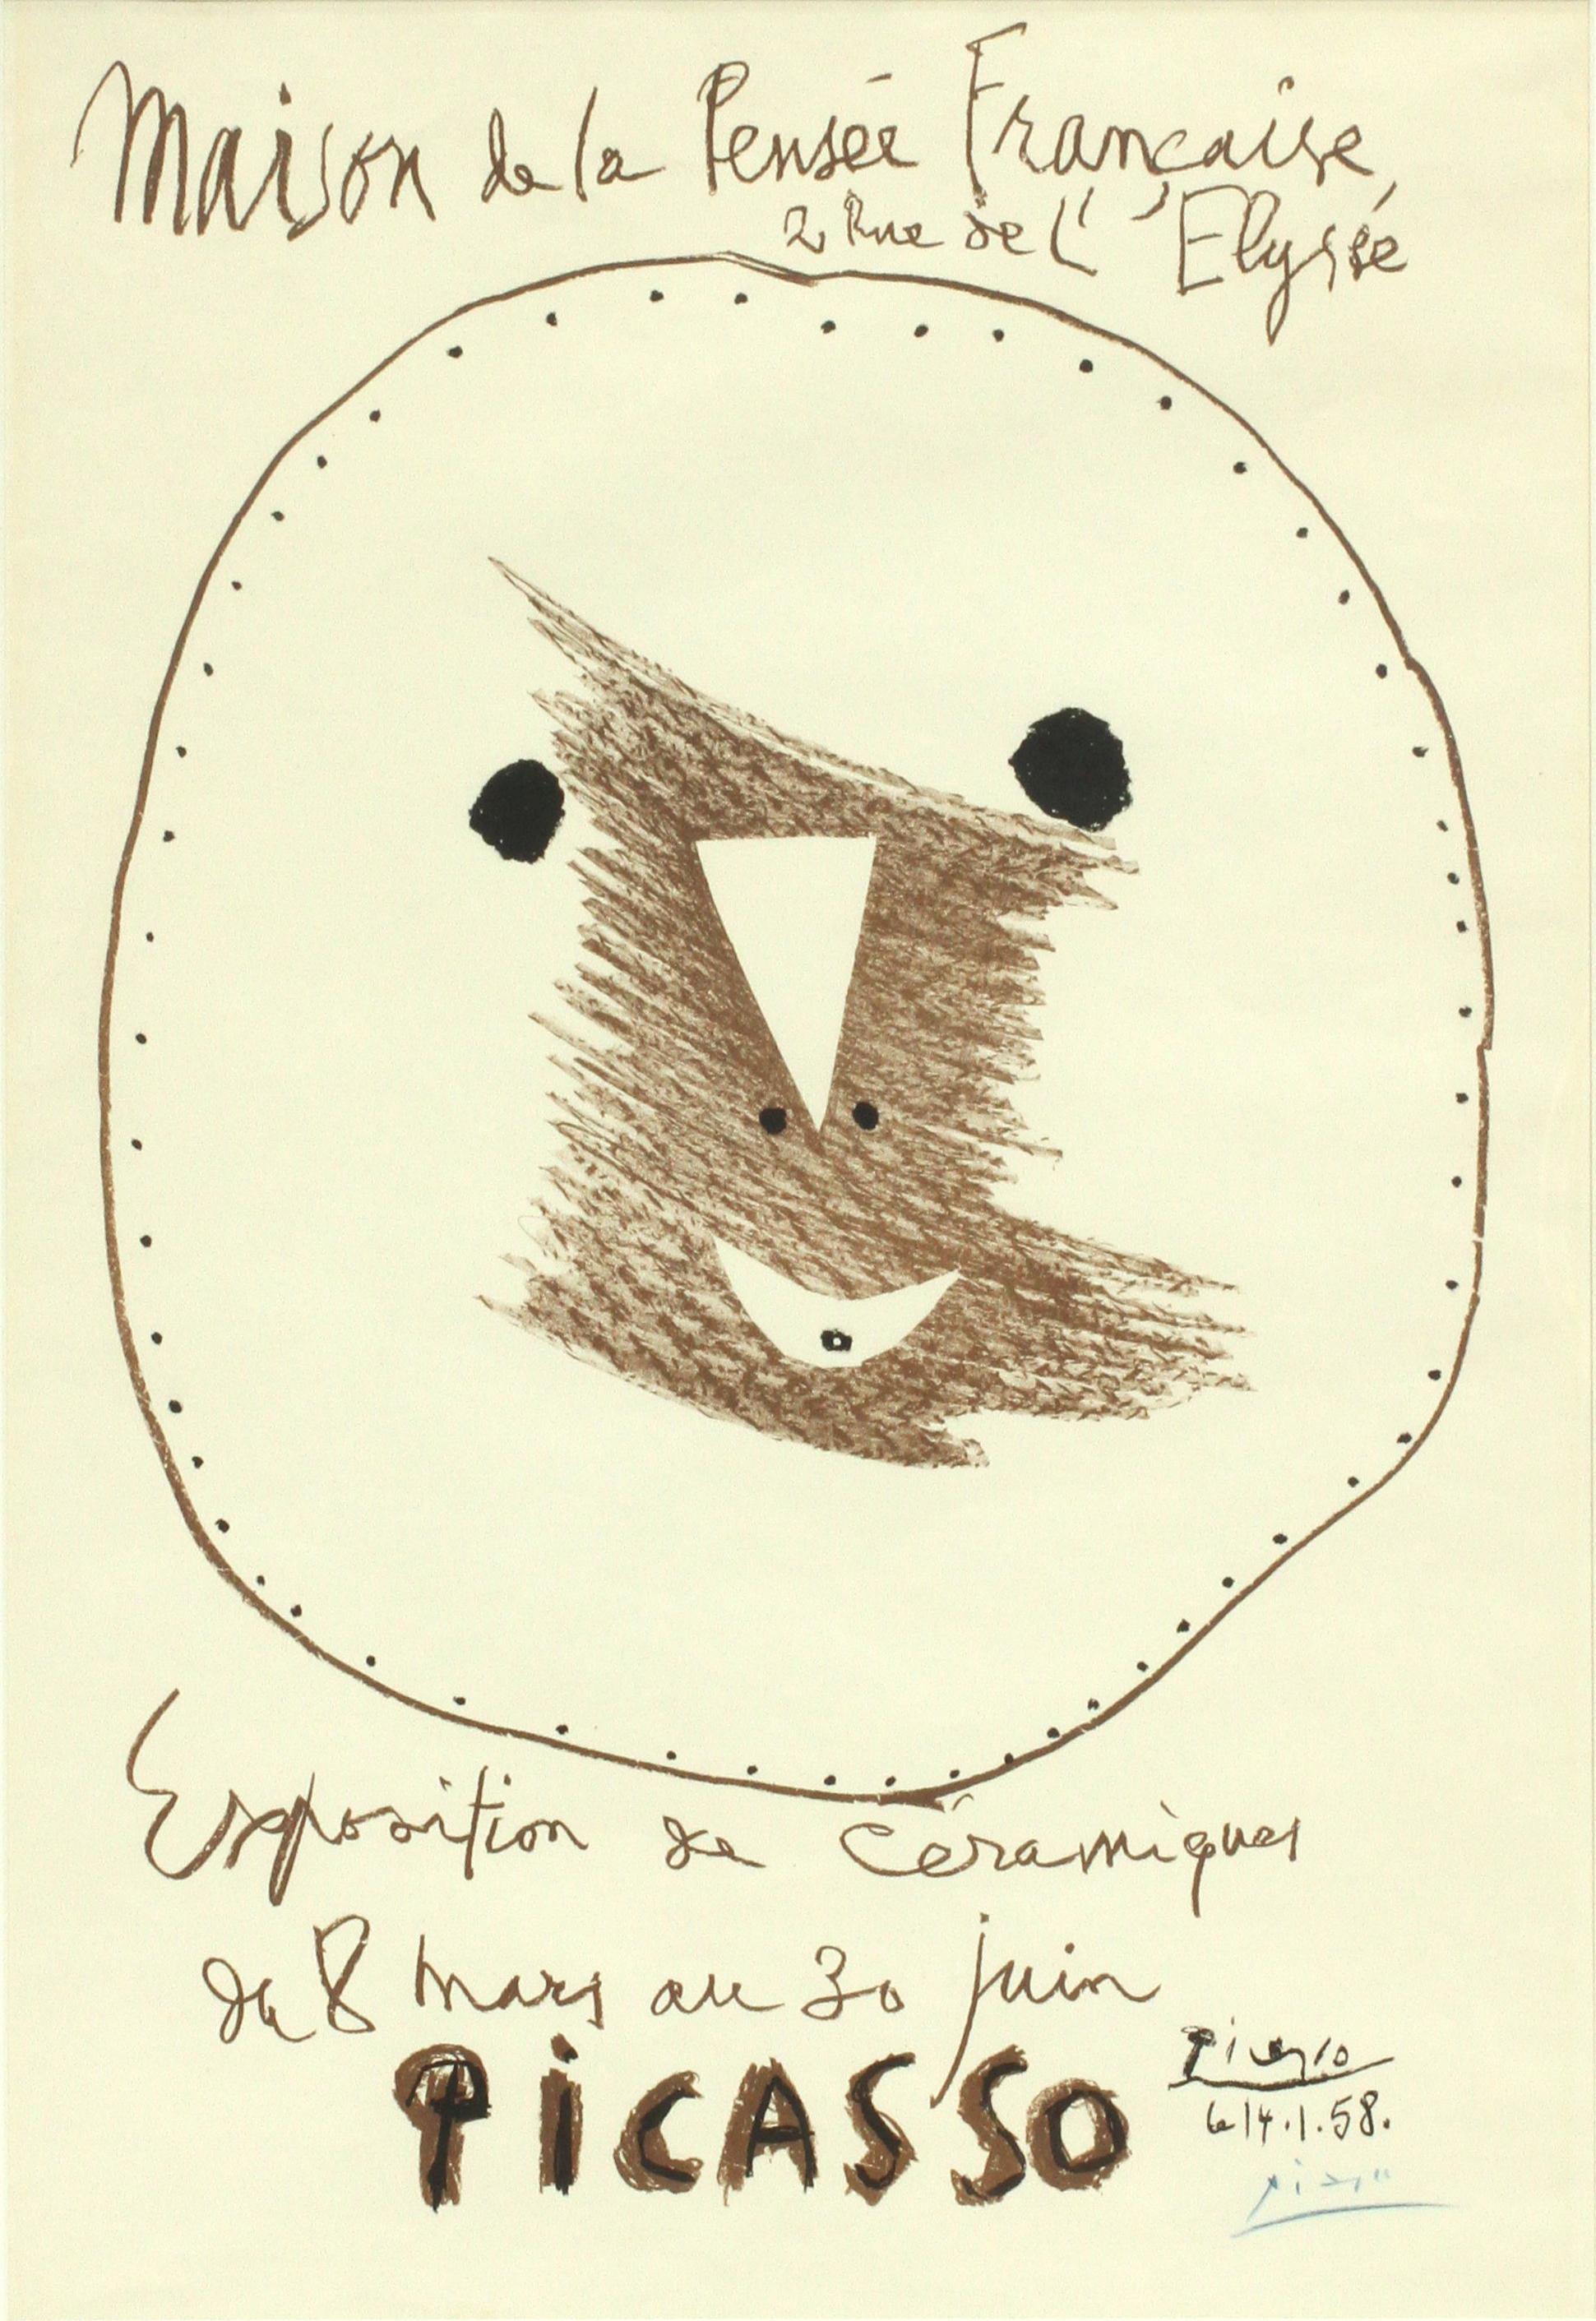 EXPOSITION DE CERAMIQUES 1958 - Print by Pablo Picasso